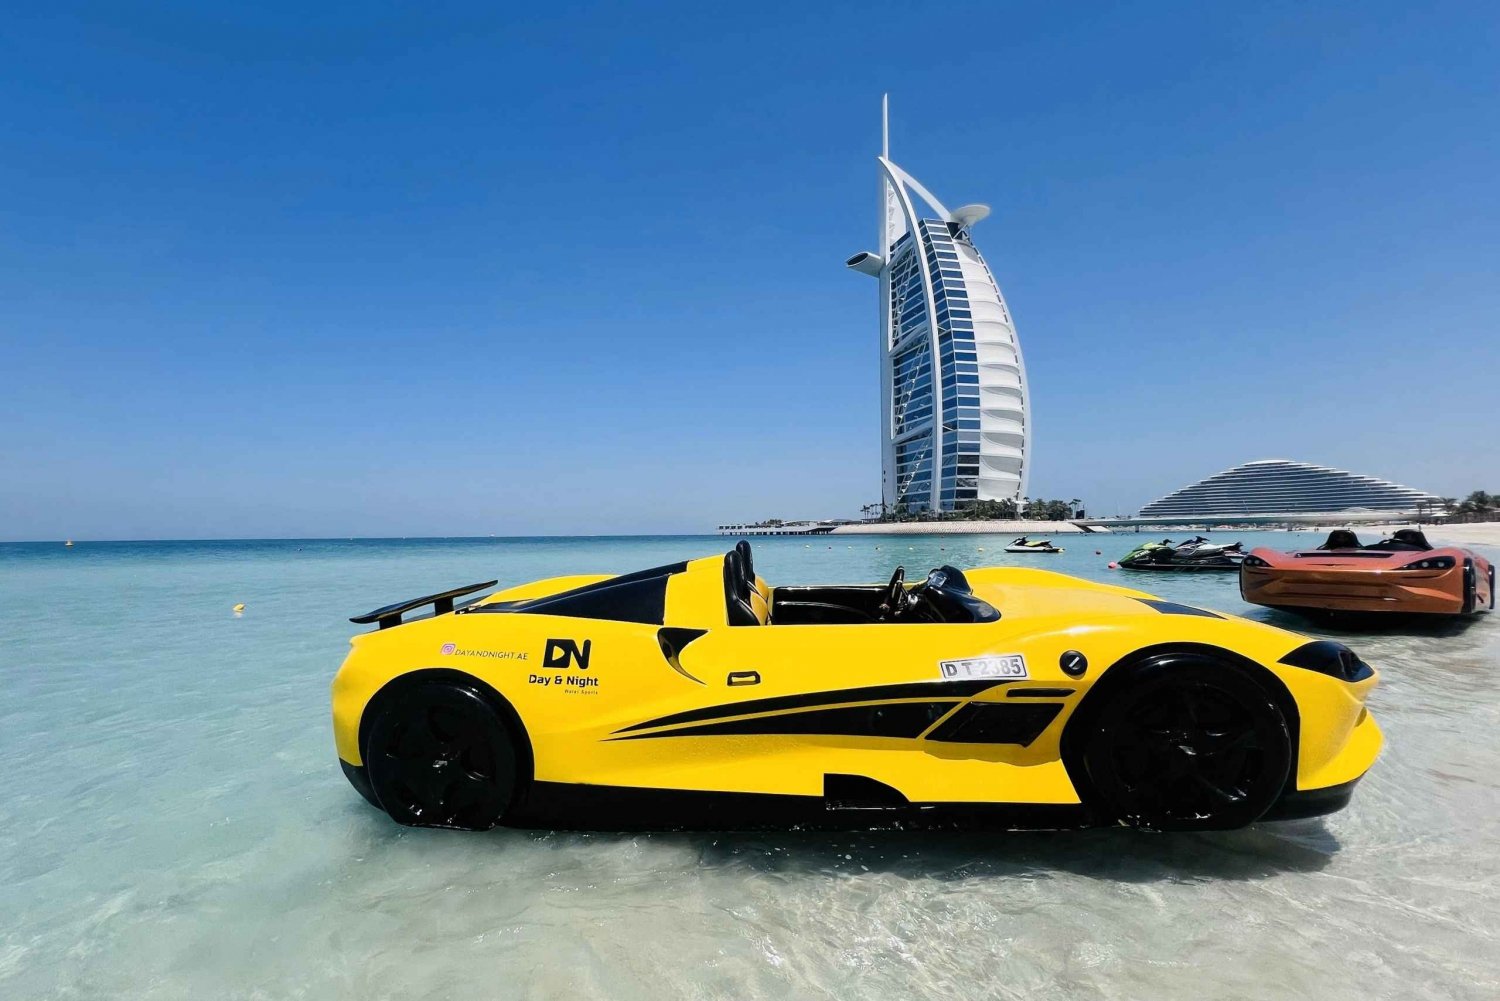 Dubaï : Tour de la Marina en Jetcar avec vue sur le Burj Al Arab